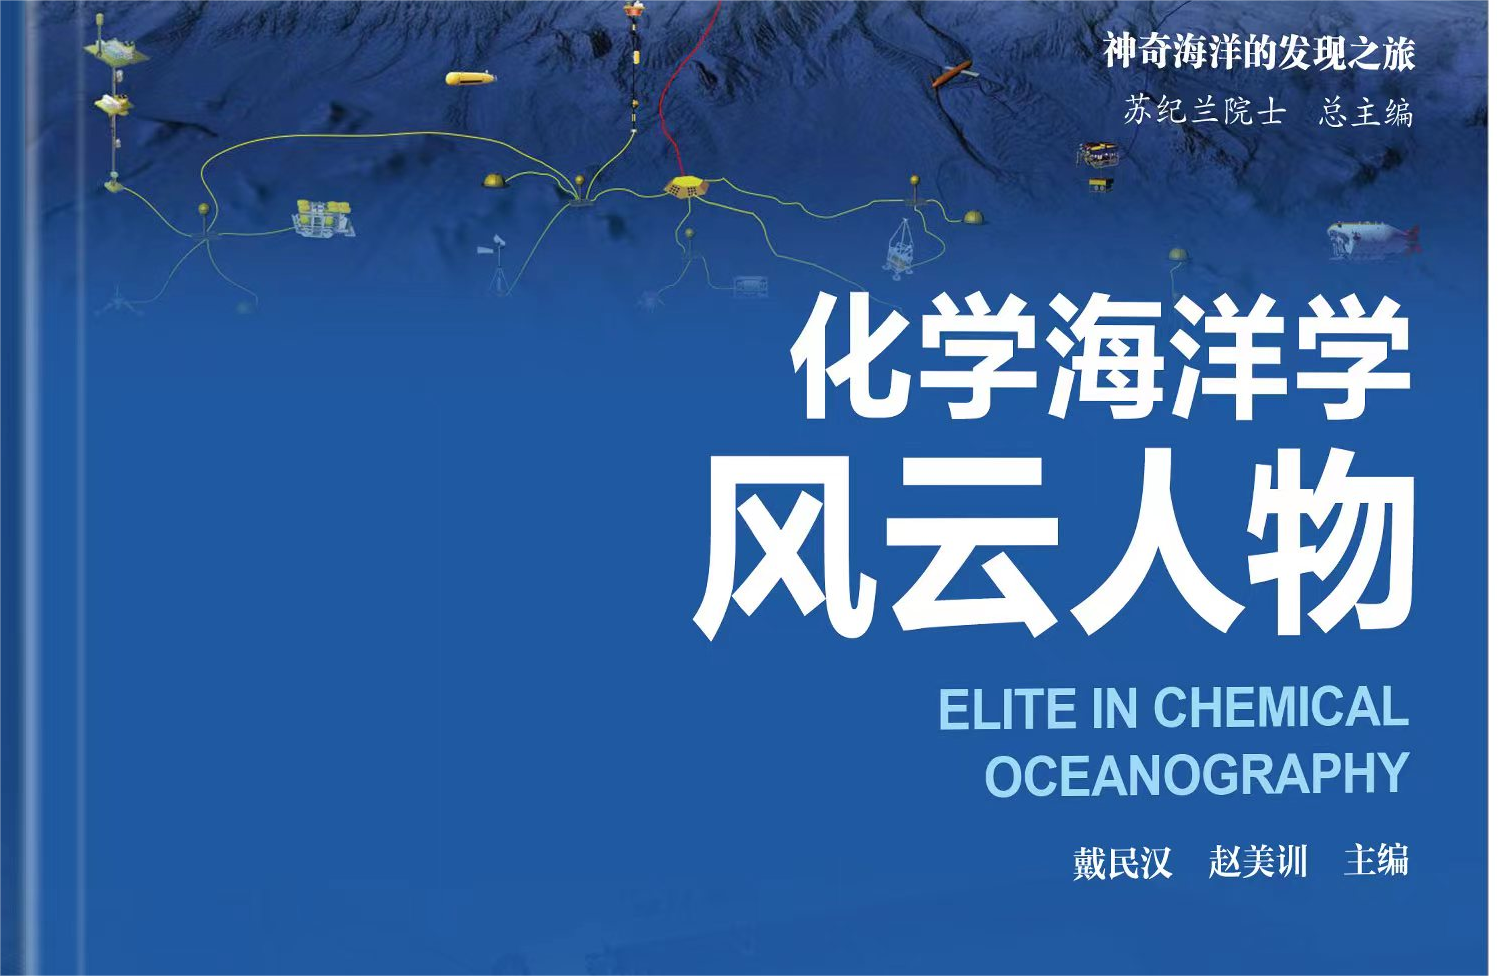 戴民汉教授与赵美训教授领衔主编的《化学海洋学风云人物》正式出版